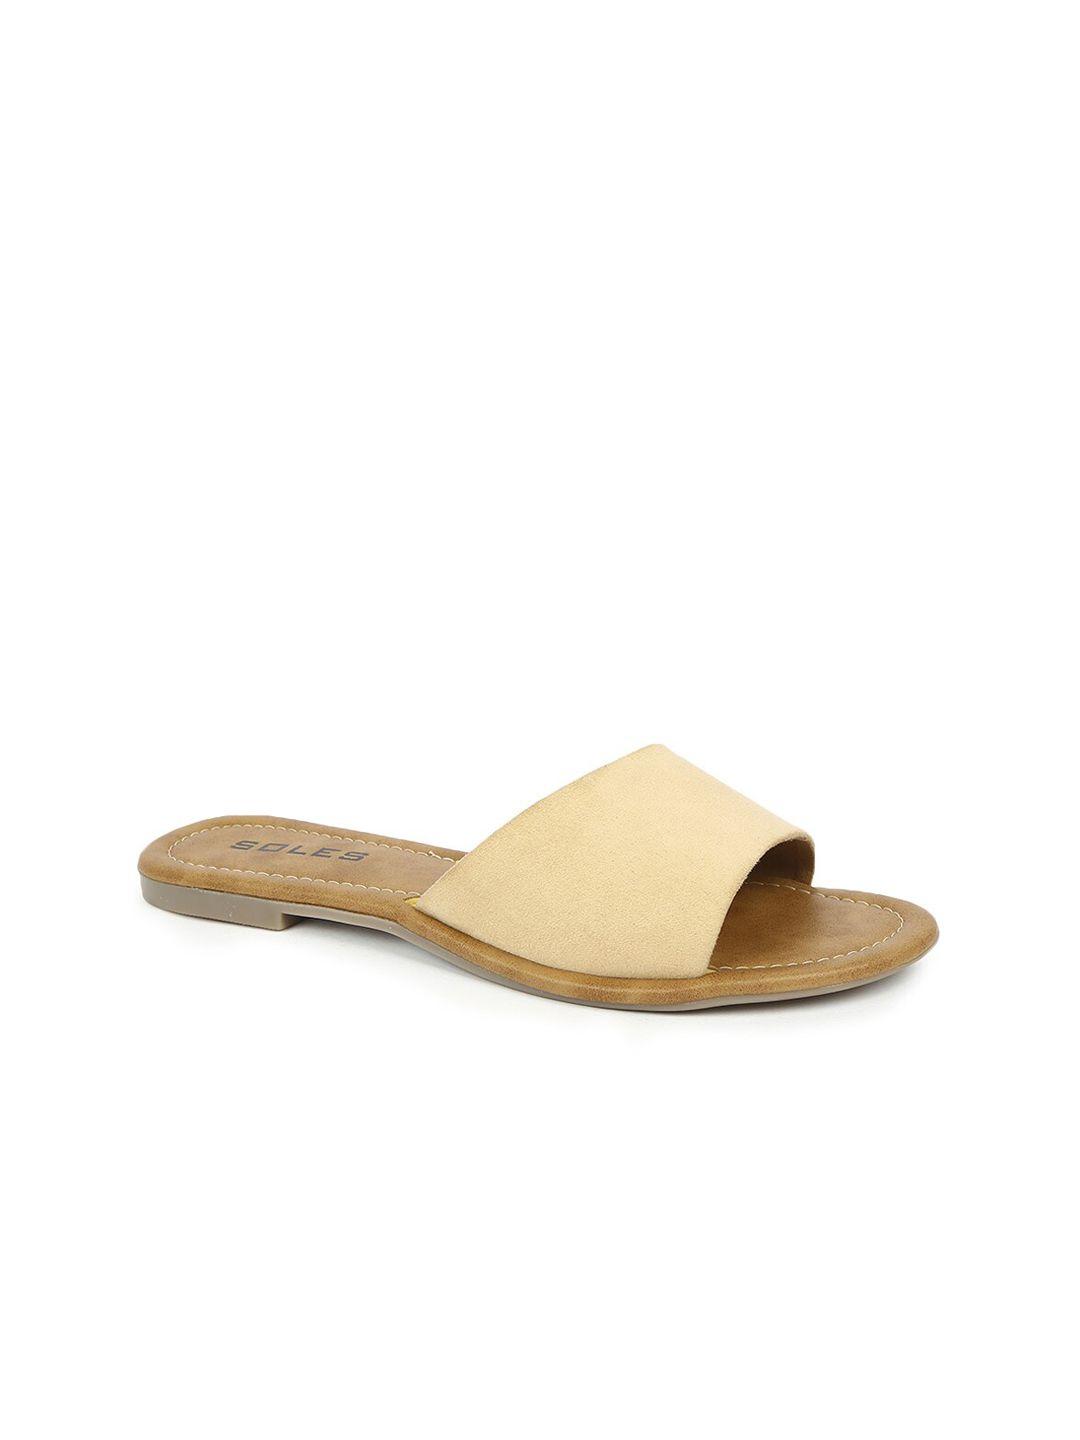 soles women beige open toe flats